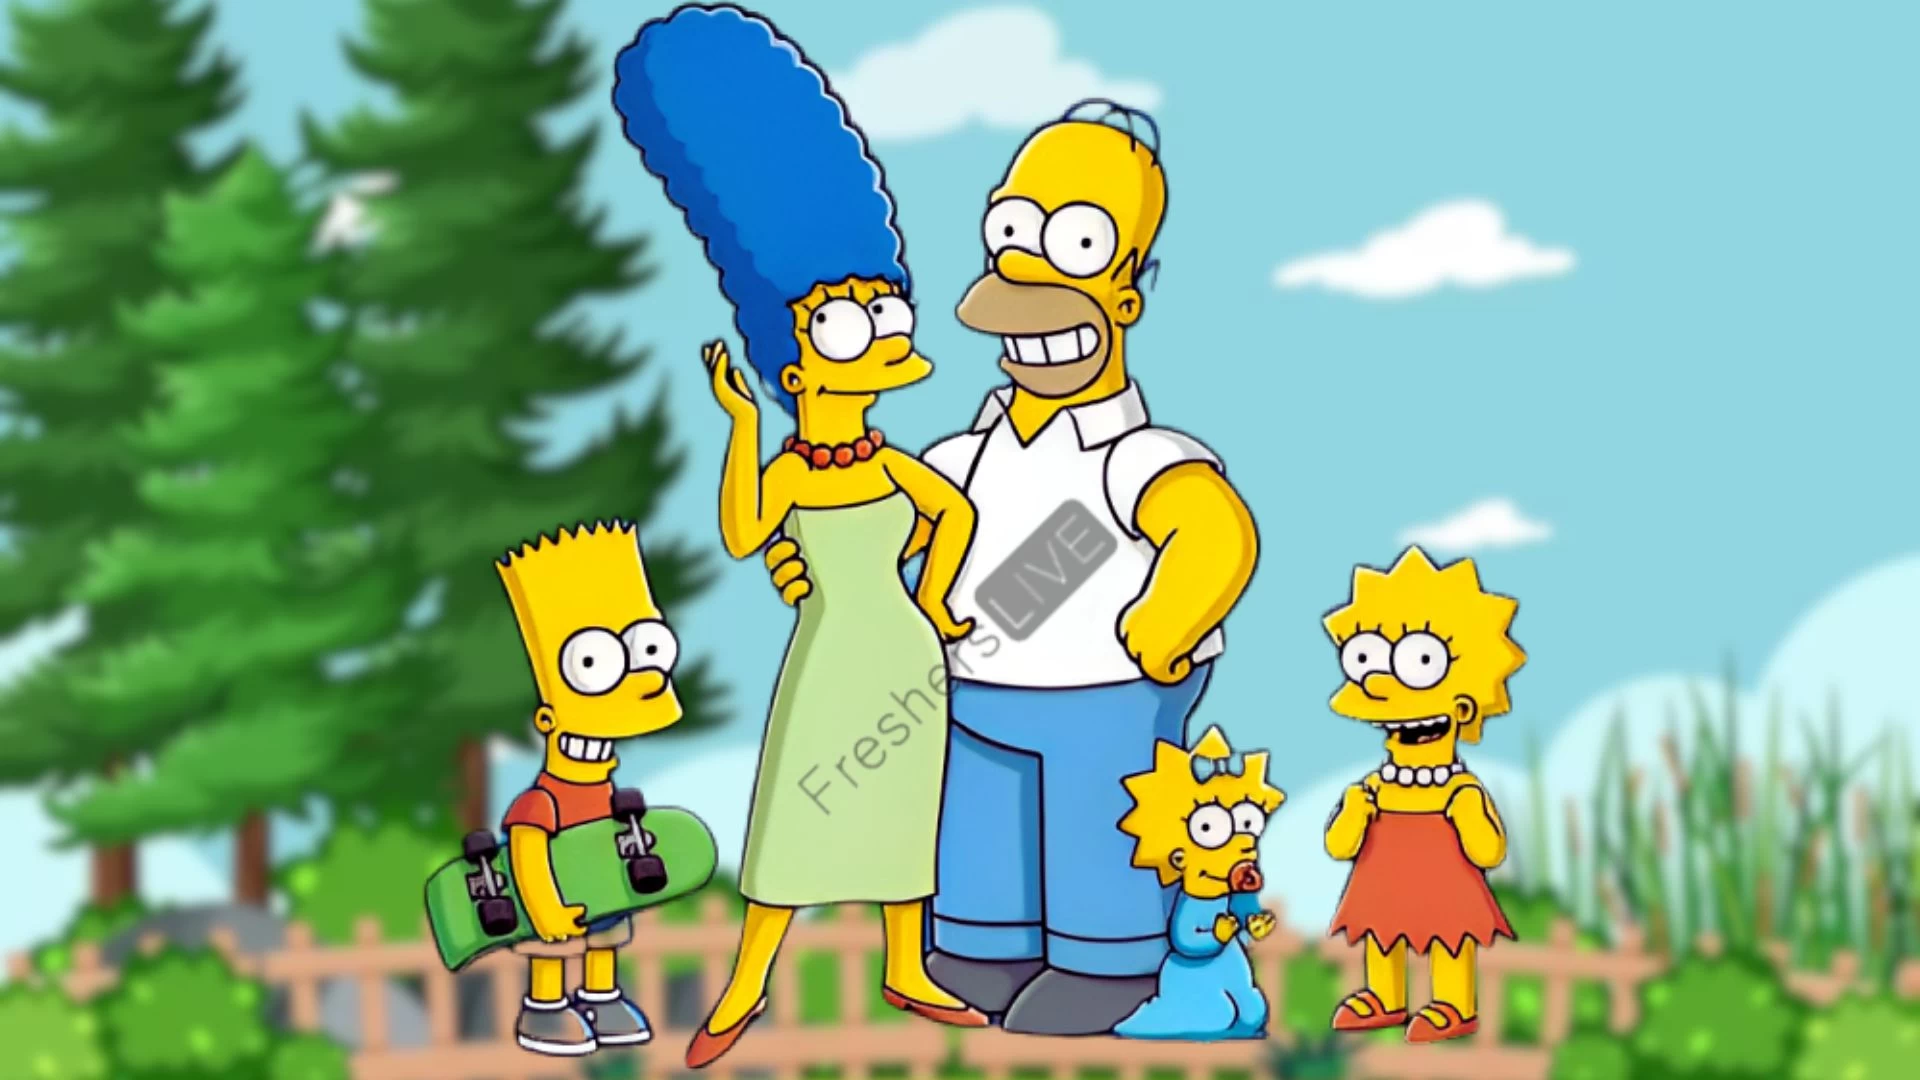 Los Simpson Temporada 35 Episodio 2 Fecha y hora de lanzamiento, cuenta regresiva, ¿cuándo saldrá?